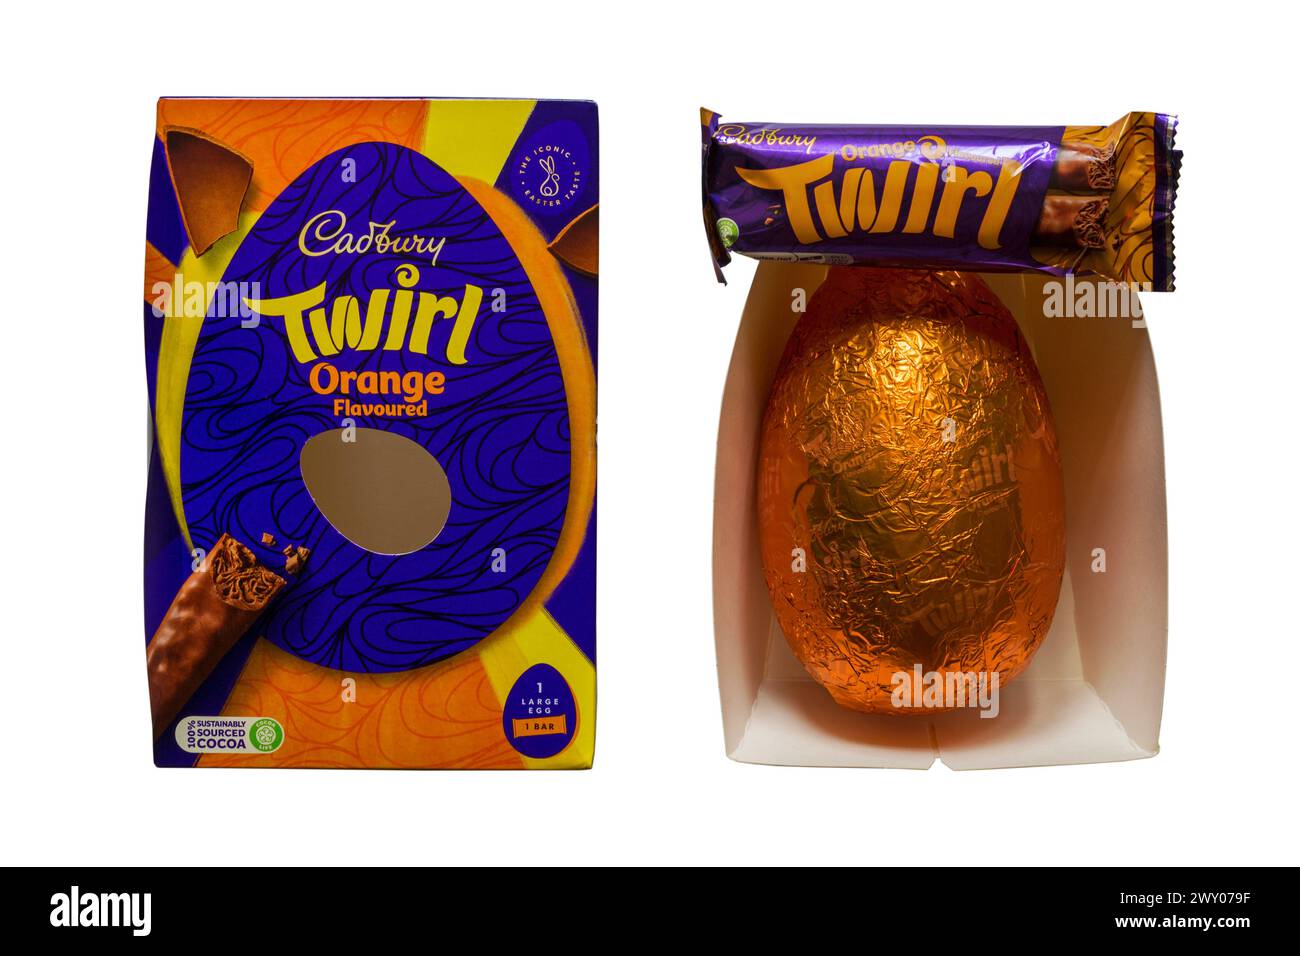 Scatola dell'uovo di Pasqua all'arancia Cadbury Twirl con uovo di Pasqua avvolto in foglio di alluminio e barretta di cioccolato Twirl rimossa dalla confezione isolata su sfondo bianco Foto Stock